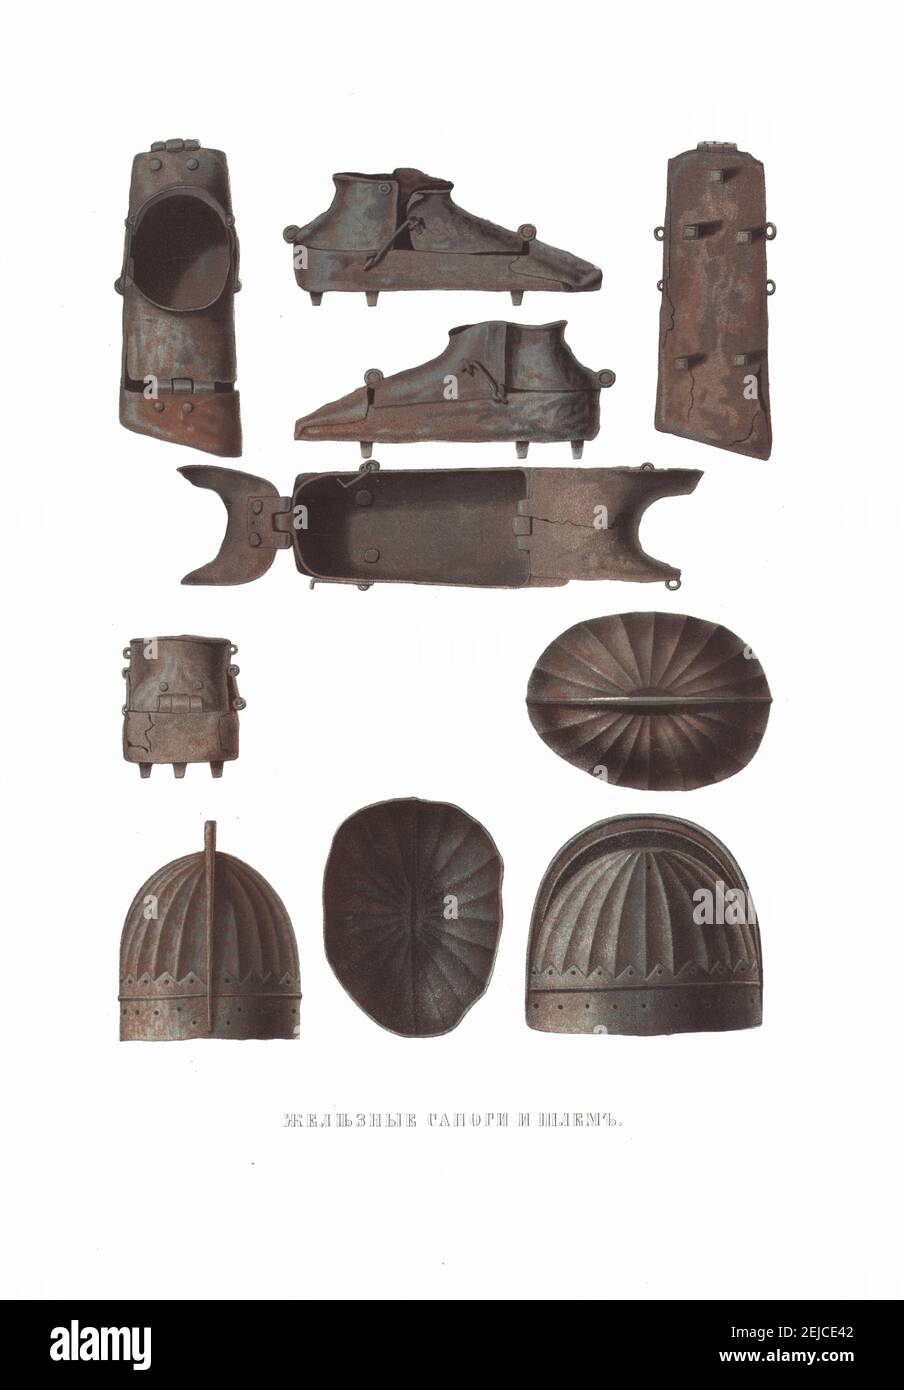 Botas de hierro y casco. De las Antigüedades del Estado Ruso. Museo: COLECCIÓN PRIVADA. Autor: Fyodor Grigoryevich Solntsev. Foto de stock